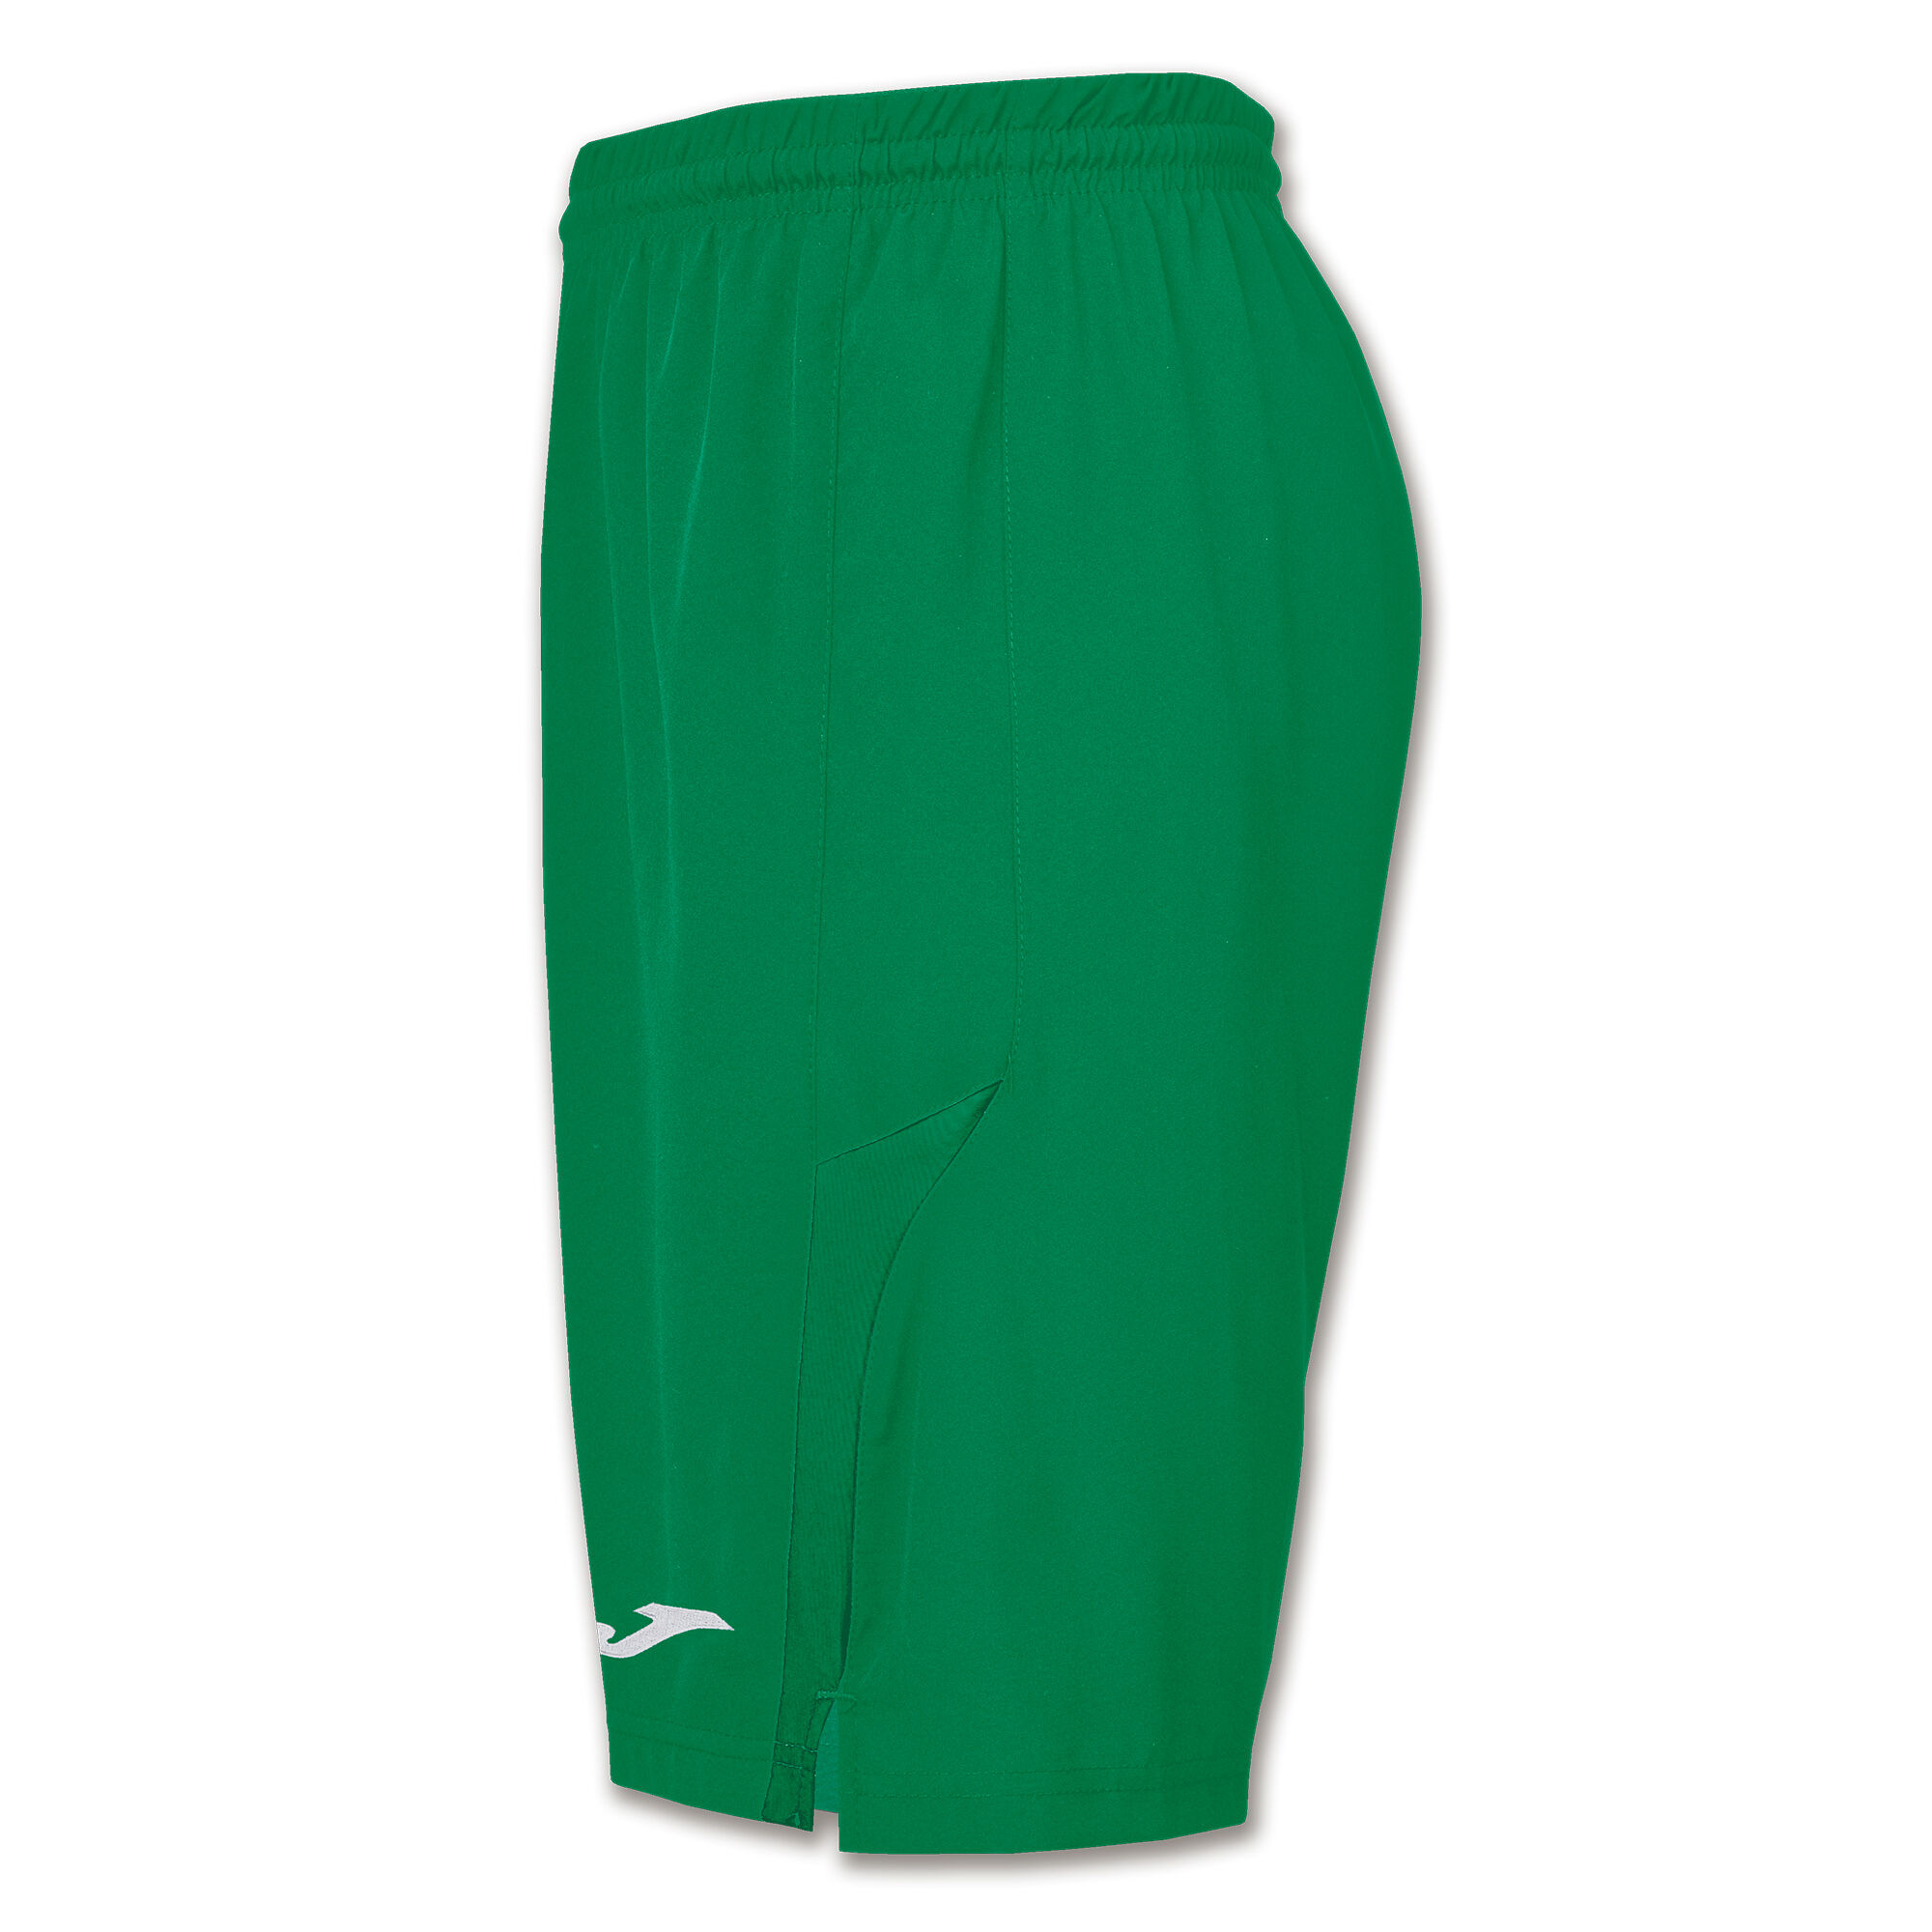 Shorts man Eurocopa II green